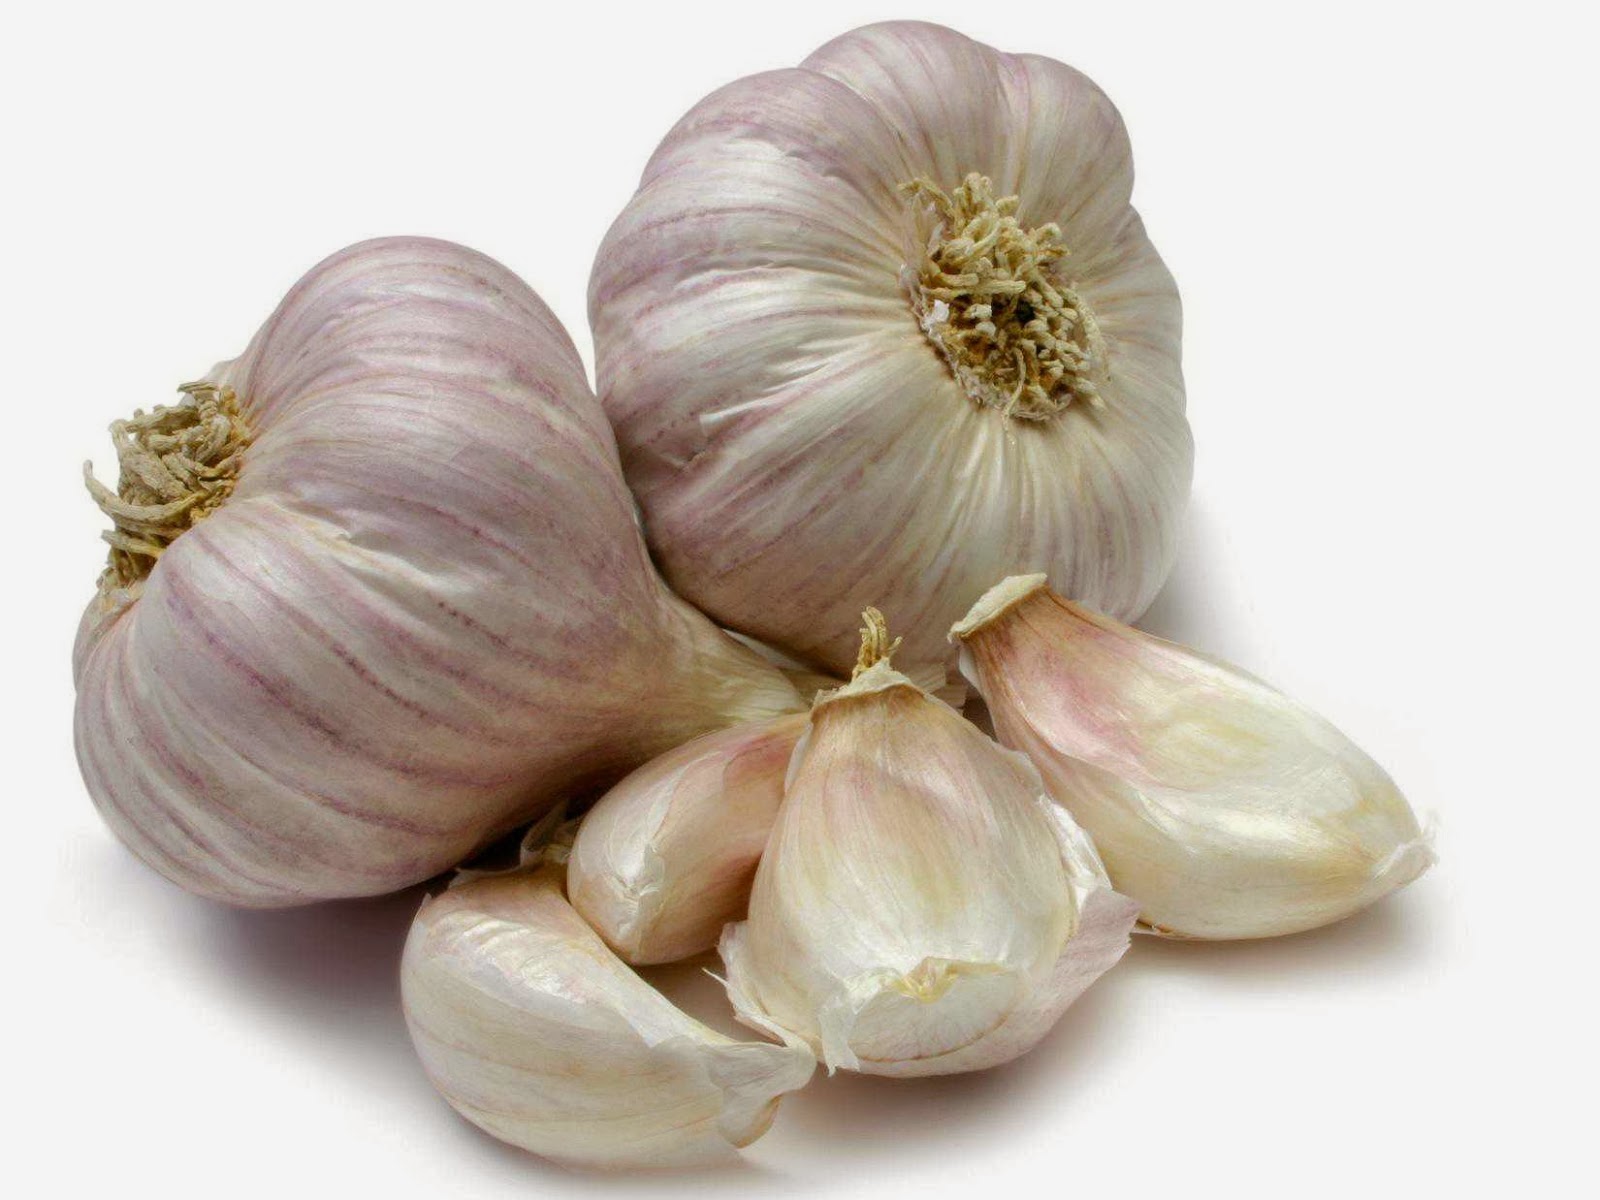  Bawang  putih  banyak khasiat dan manfaat